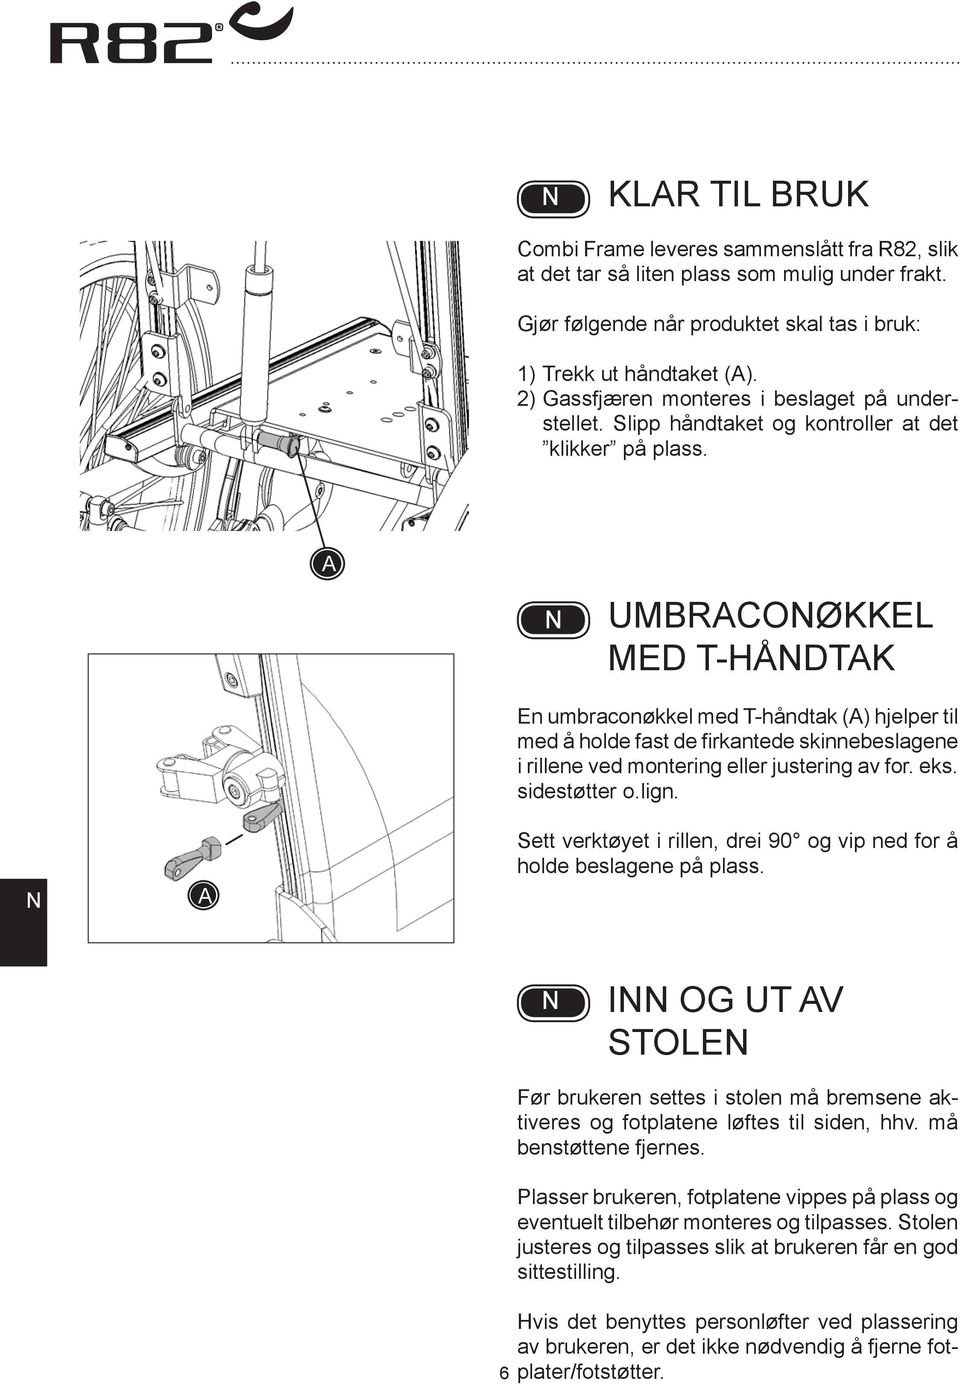 UMRCOØKKEL MED T-HÅDTK En umbraconøkkel med T-håndtak () hjelper til med å holde fast de firkantede skinnebeslagene i rillene ved montering eller justering av for. eks. sidestøtter o.lign.